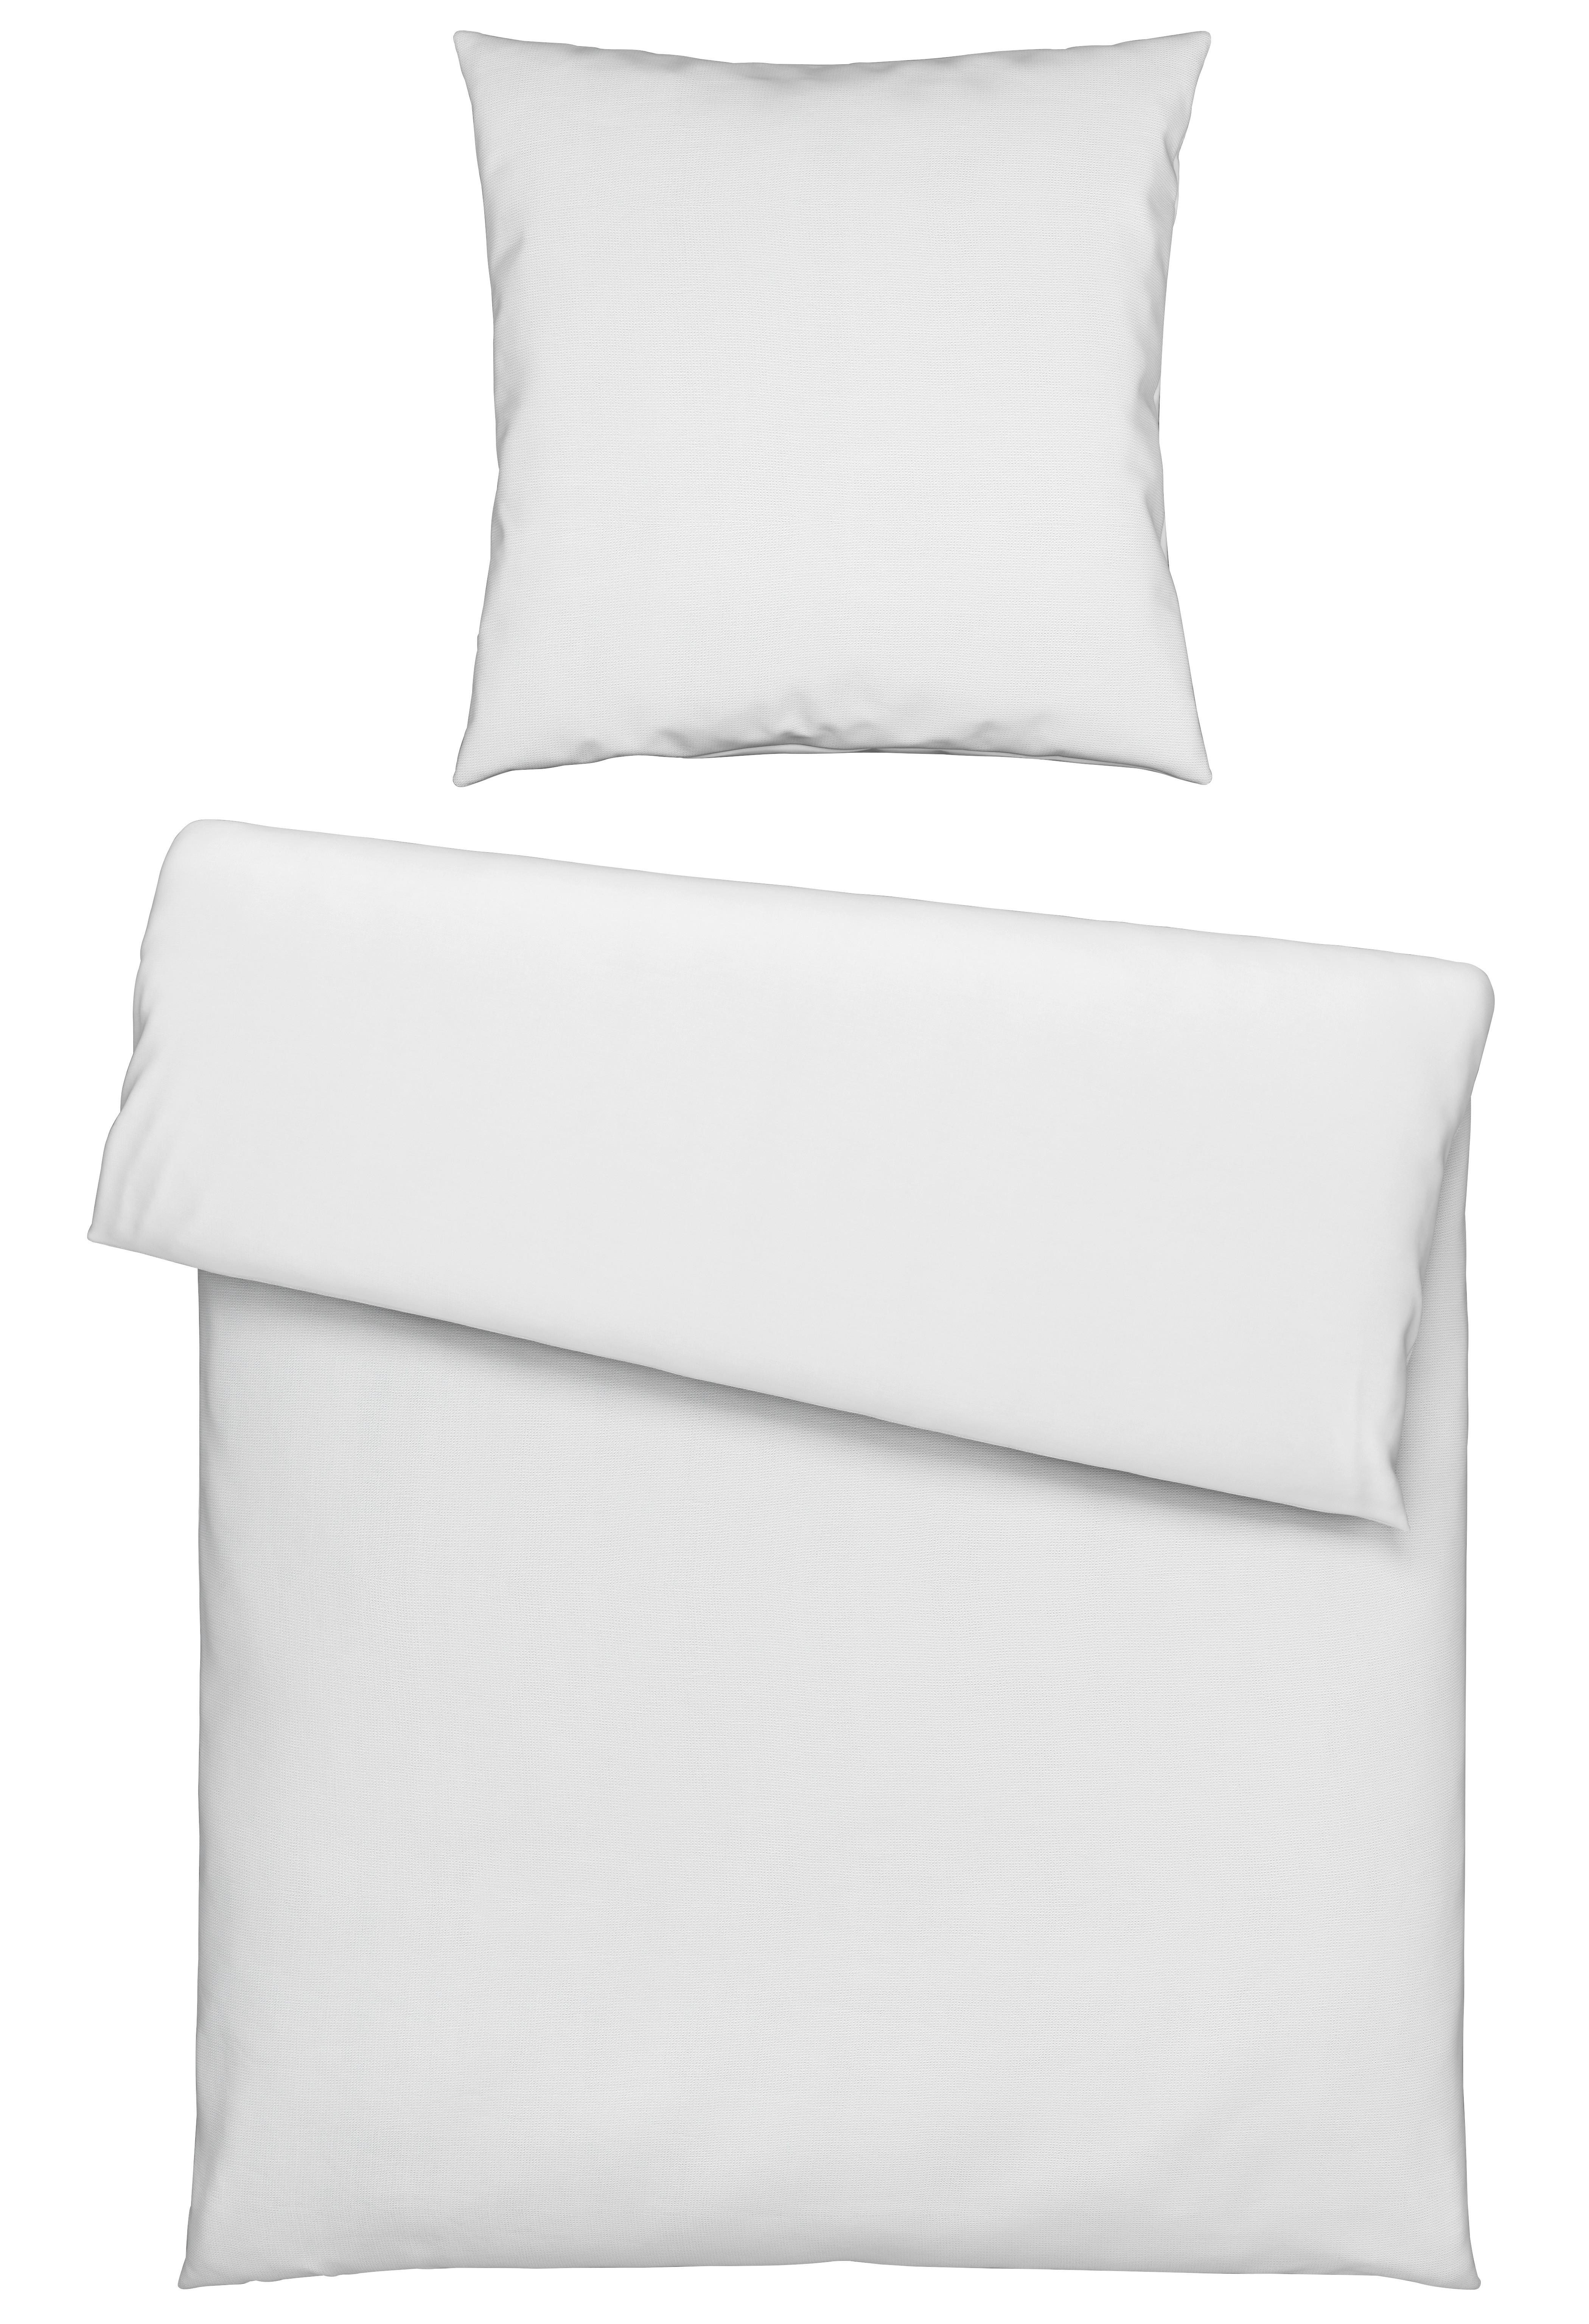 Bettwäsche Waffel in Weiß ca. 135x200cm - Weiß, MODERN, Textil (135/200cm) - Modern Living